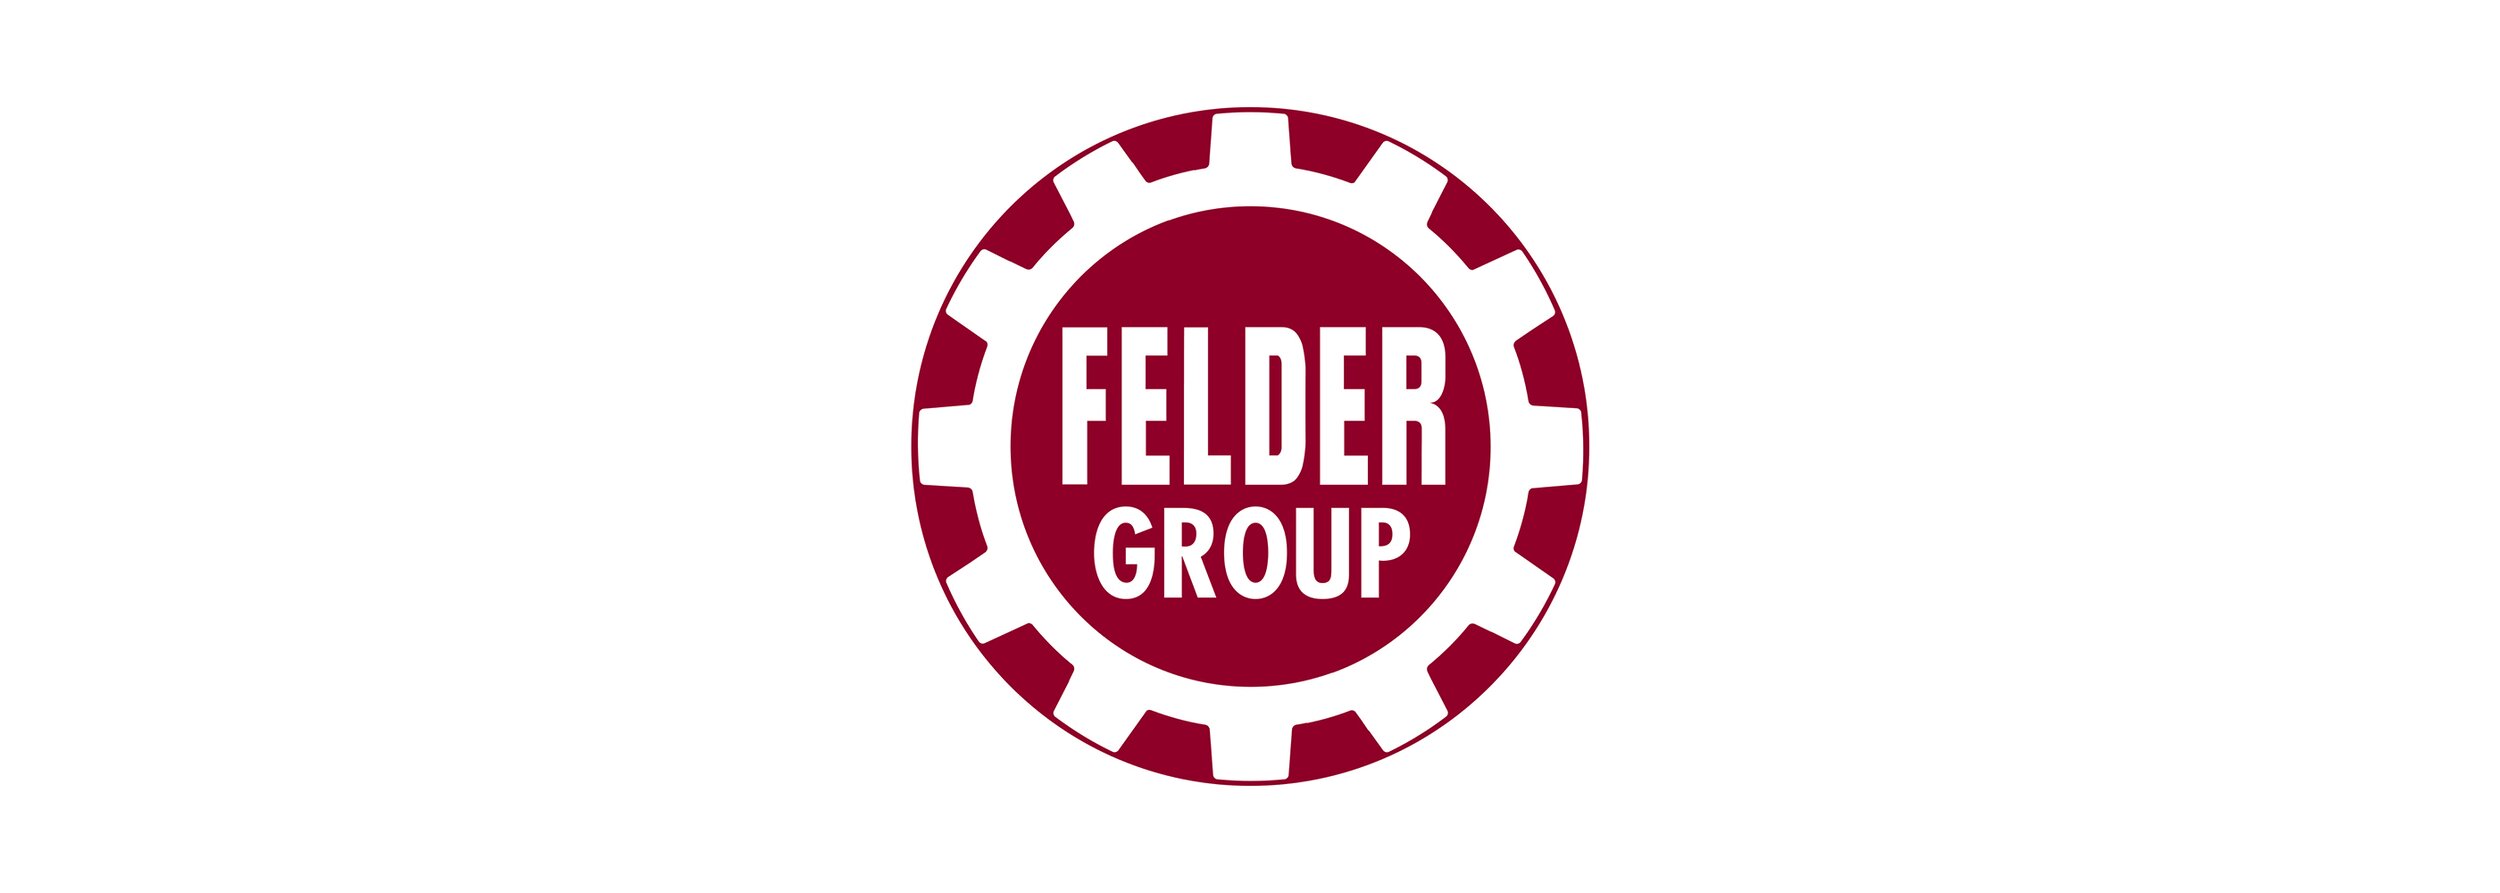 FELDER Group.jpg